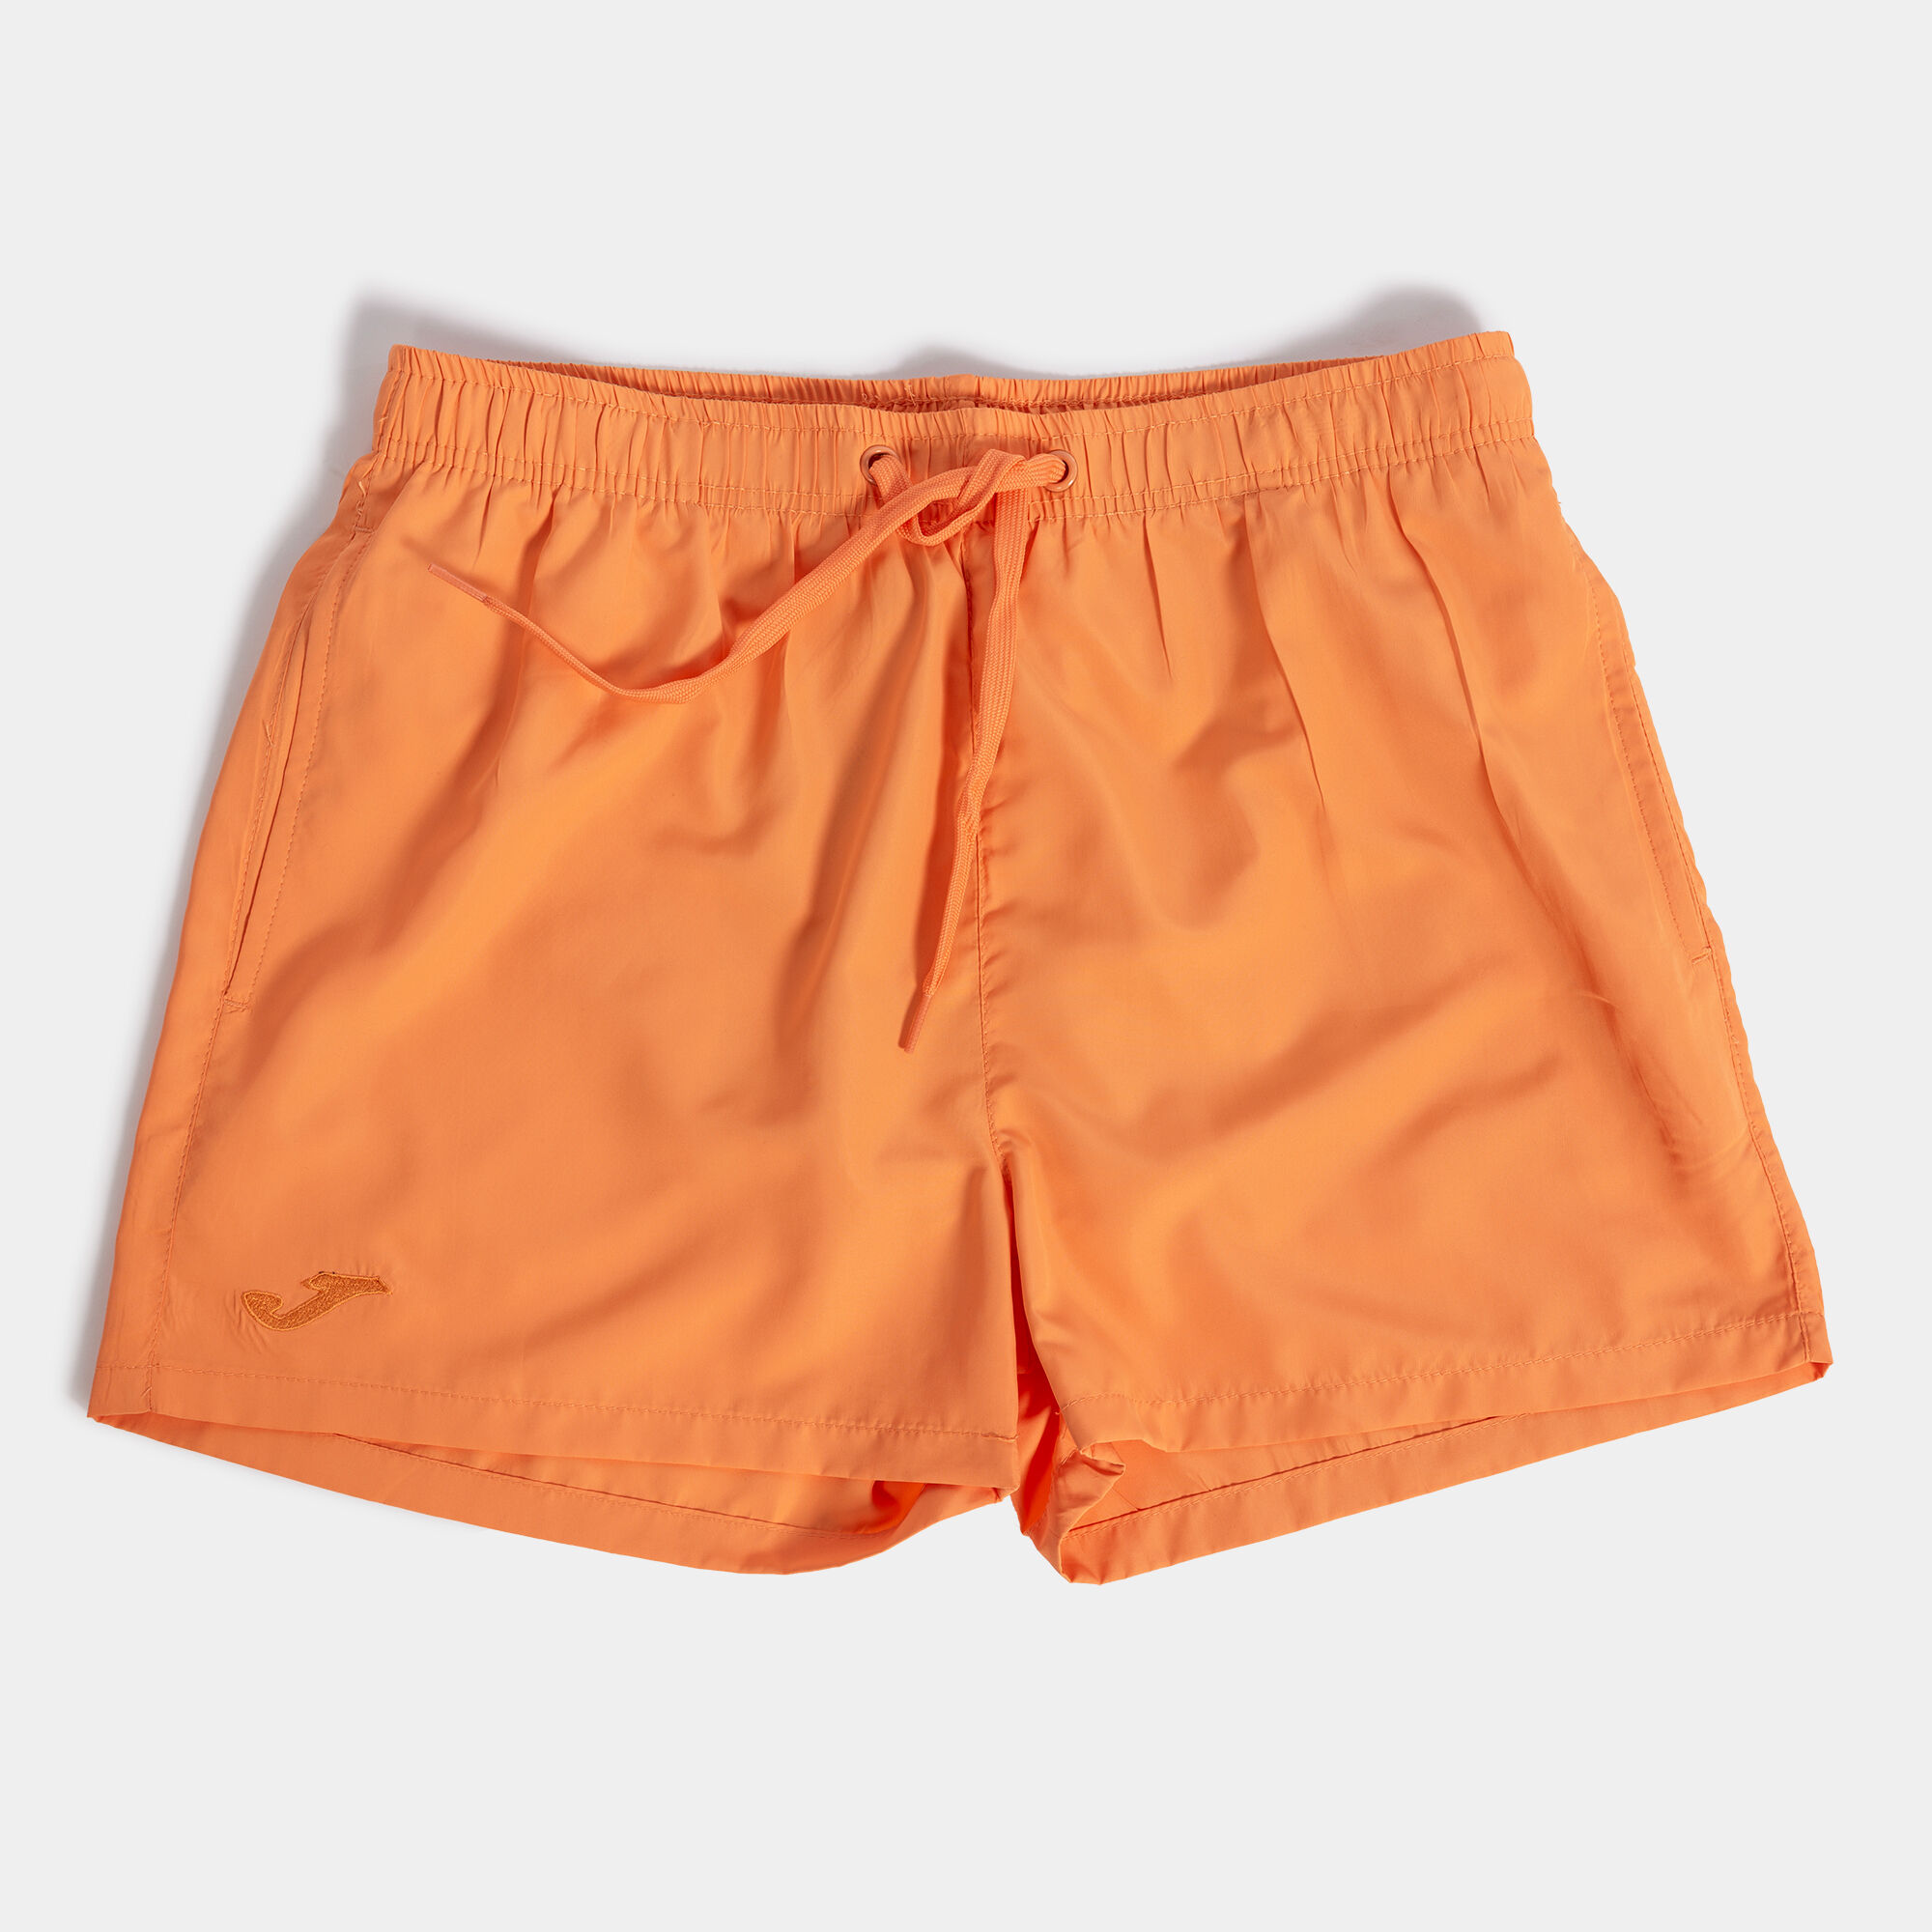 Swimming trunks man Antilles orange